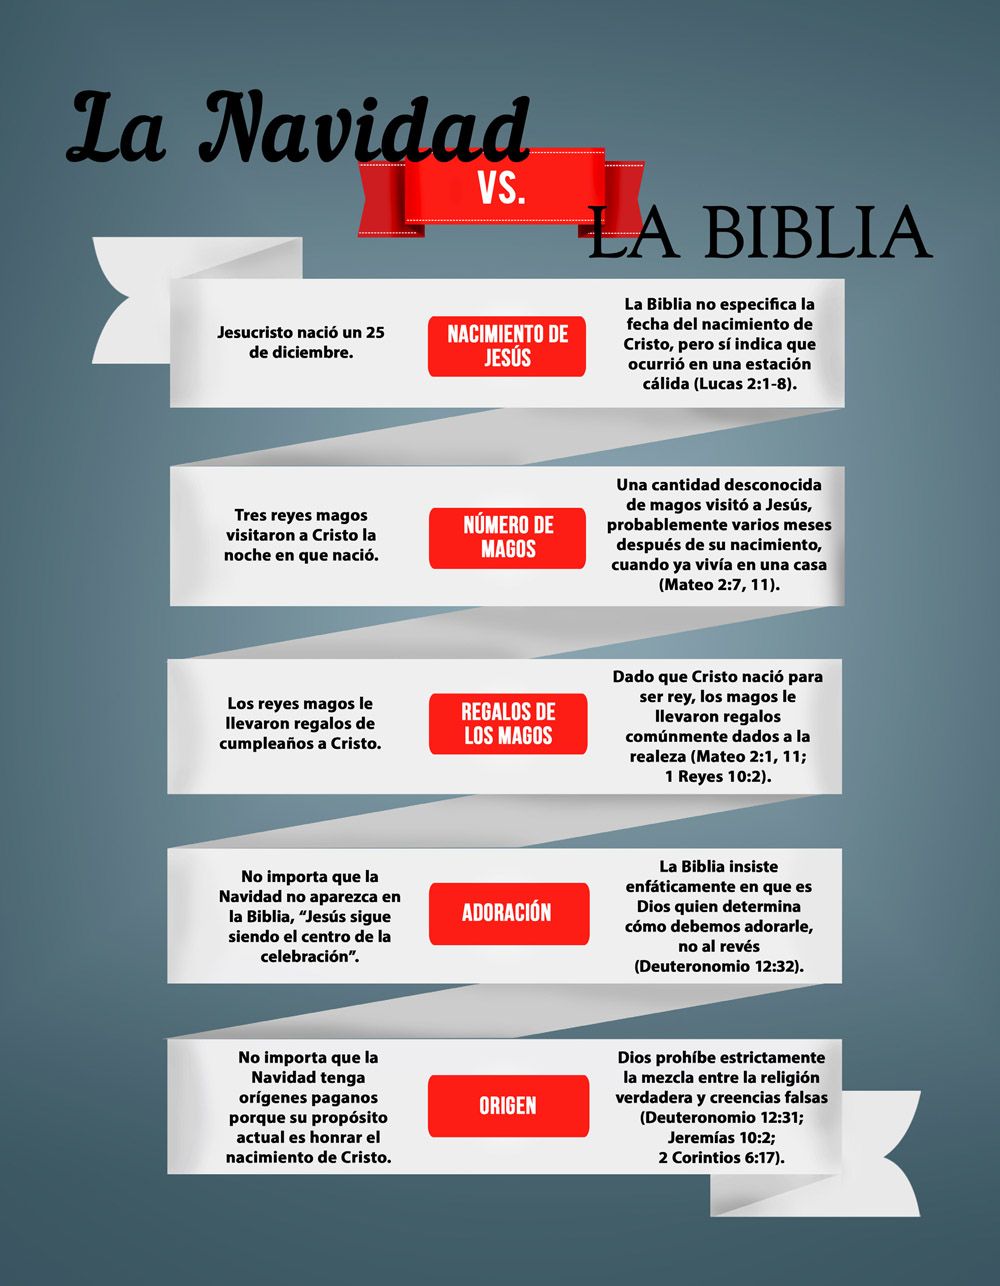 La Navidad vs. La Biblia